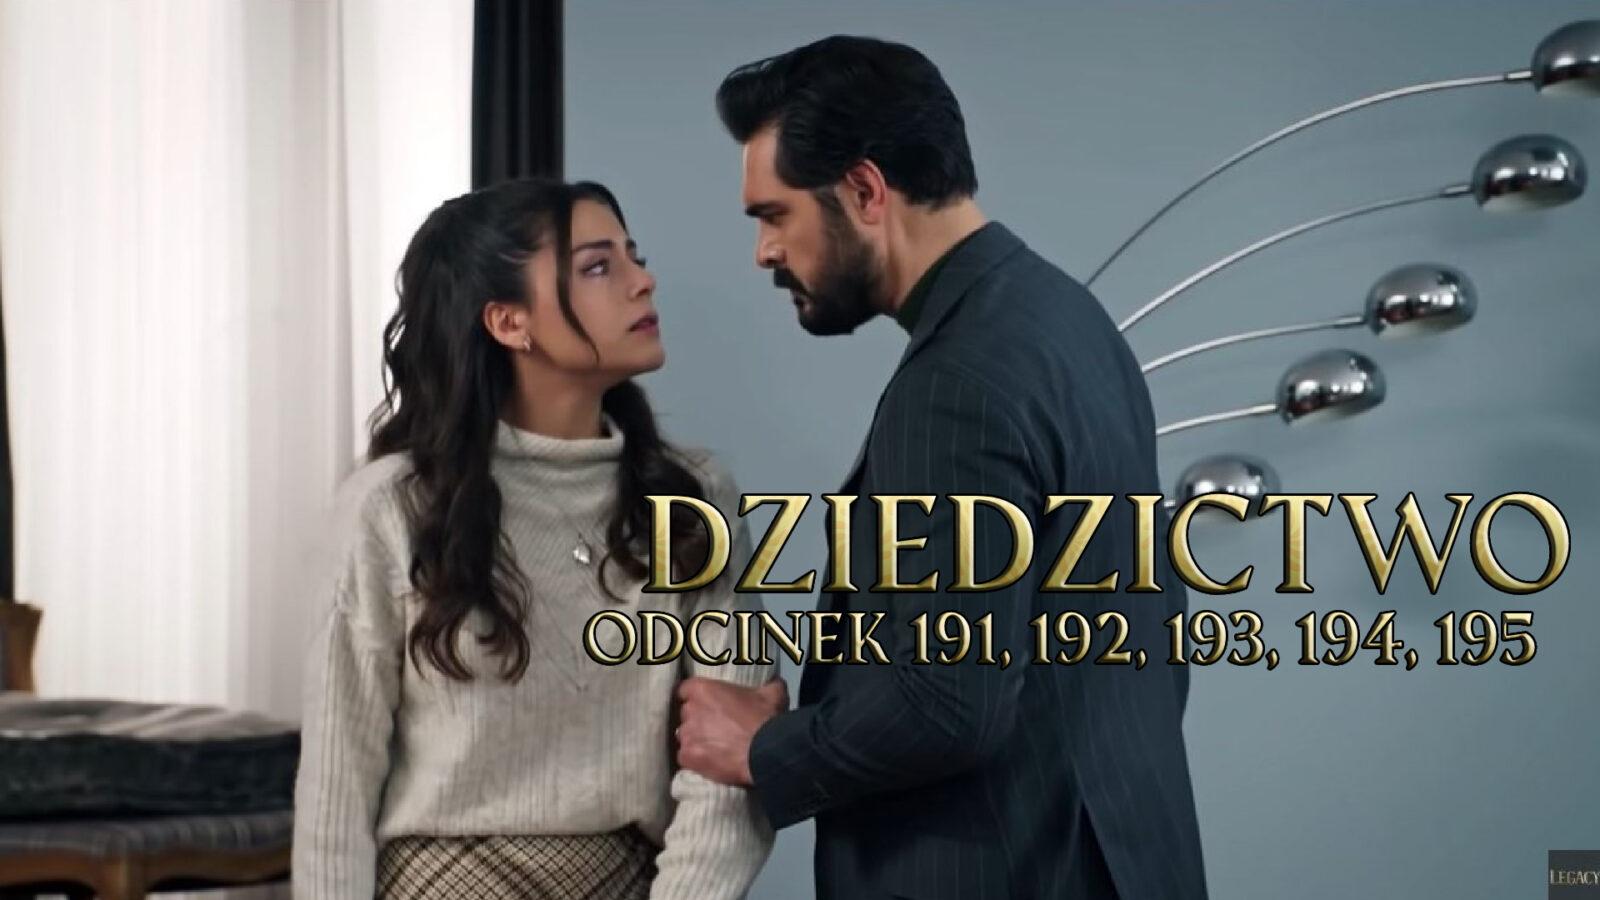 Dziedzictwo odcinki 191, 192, 193, 194, 195 online ZA DARMO – Oglądaj Serial turecki DZIEDZICTWO na VOD TVP